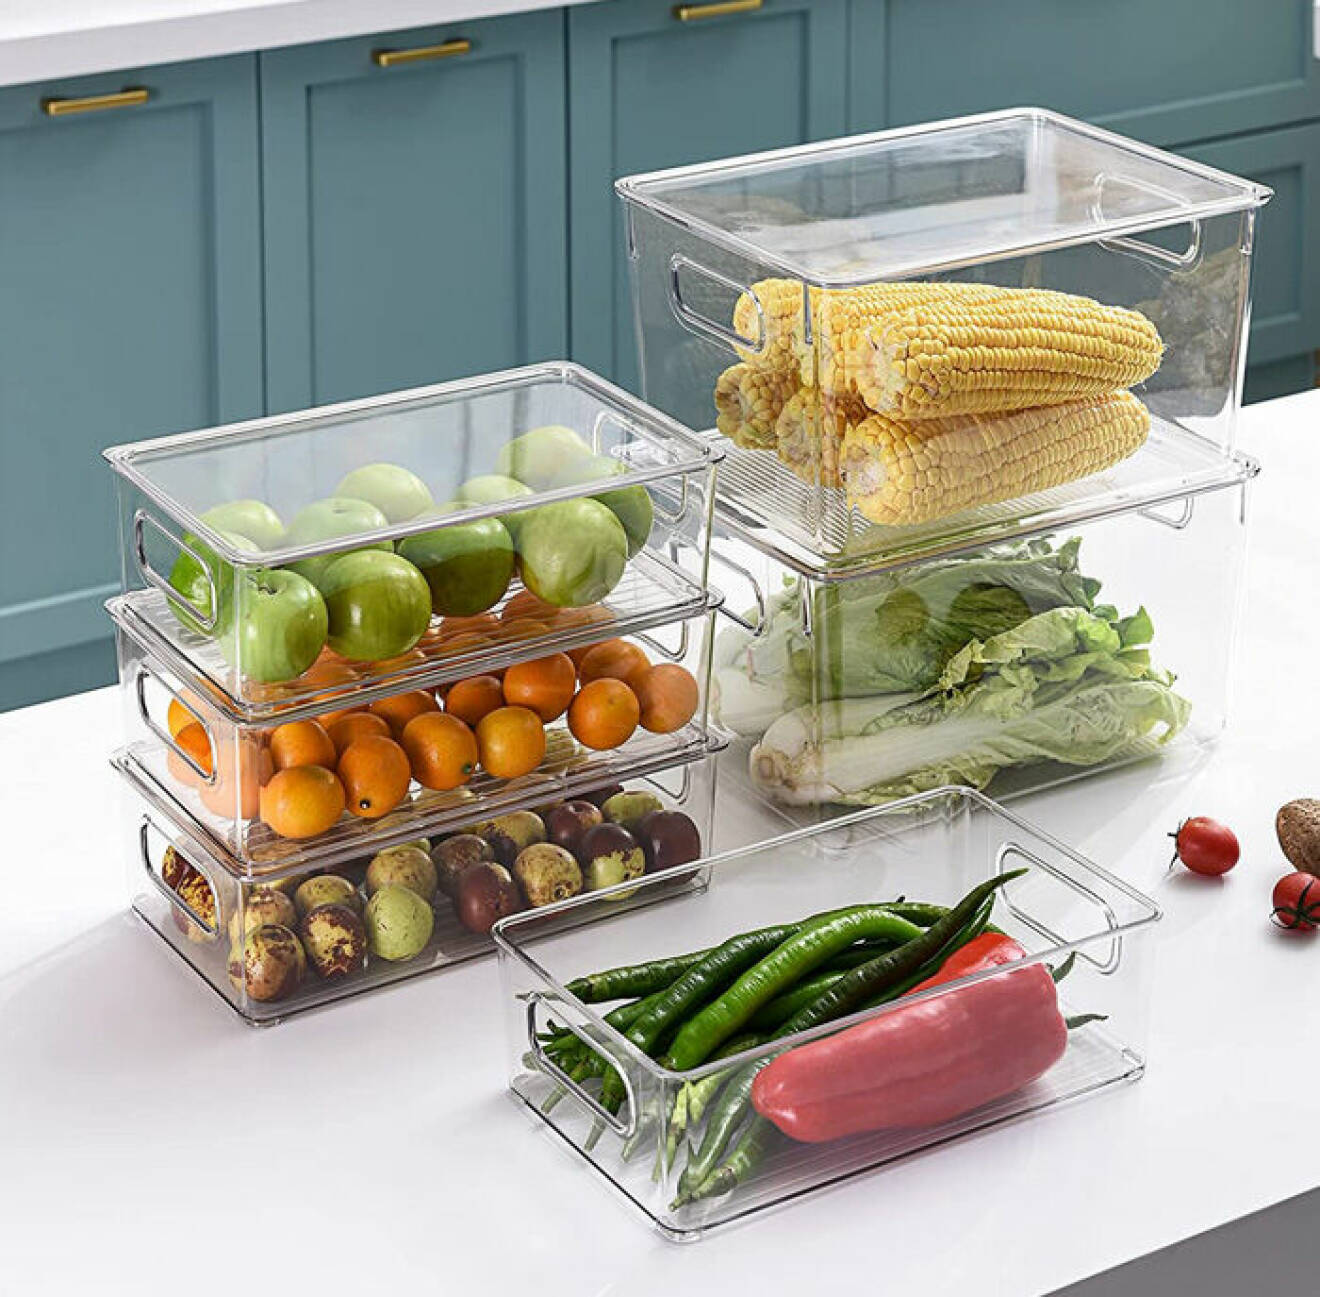 organisera kylskåp – genomskinliga plastlådor till kylskåp